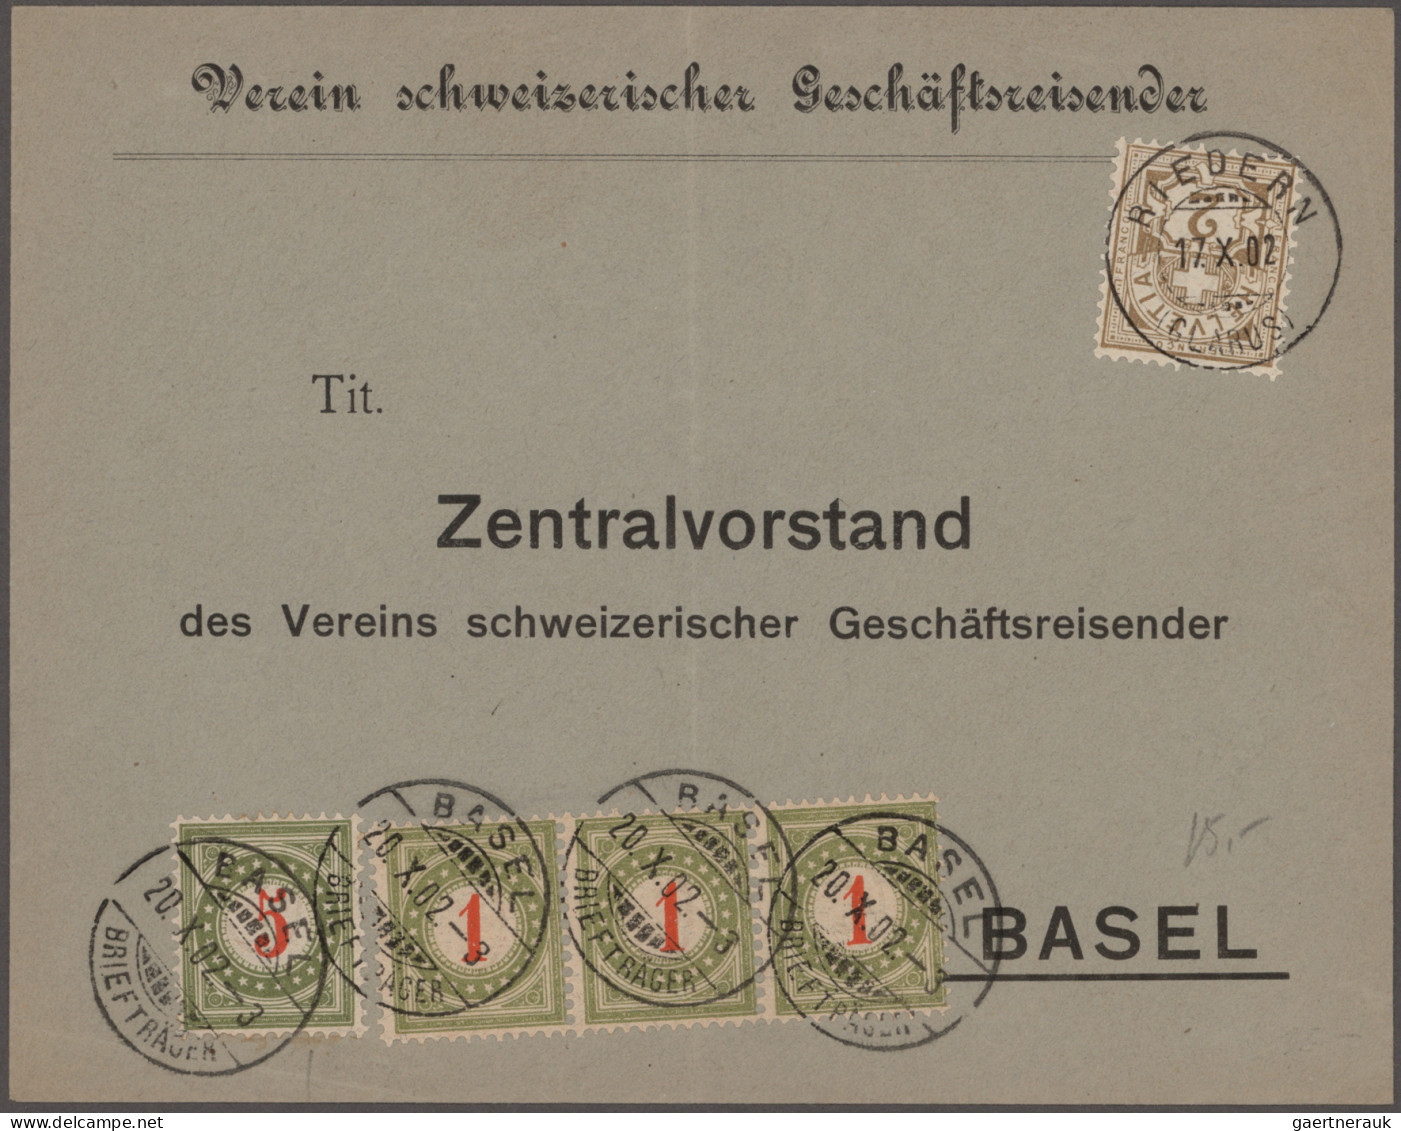 Schweiz - Portomarken: 1878/1910, Sammlung von 85 unzureichend frankierten Brief